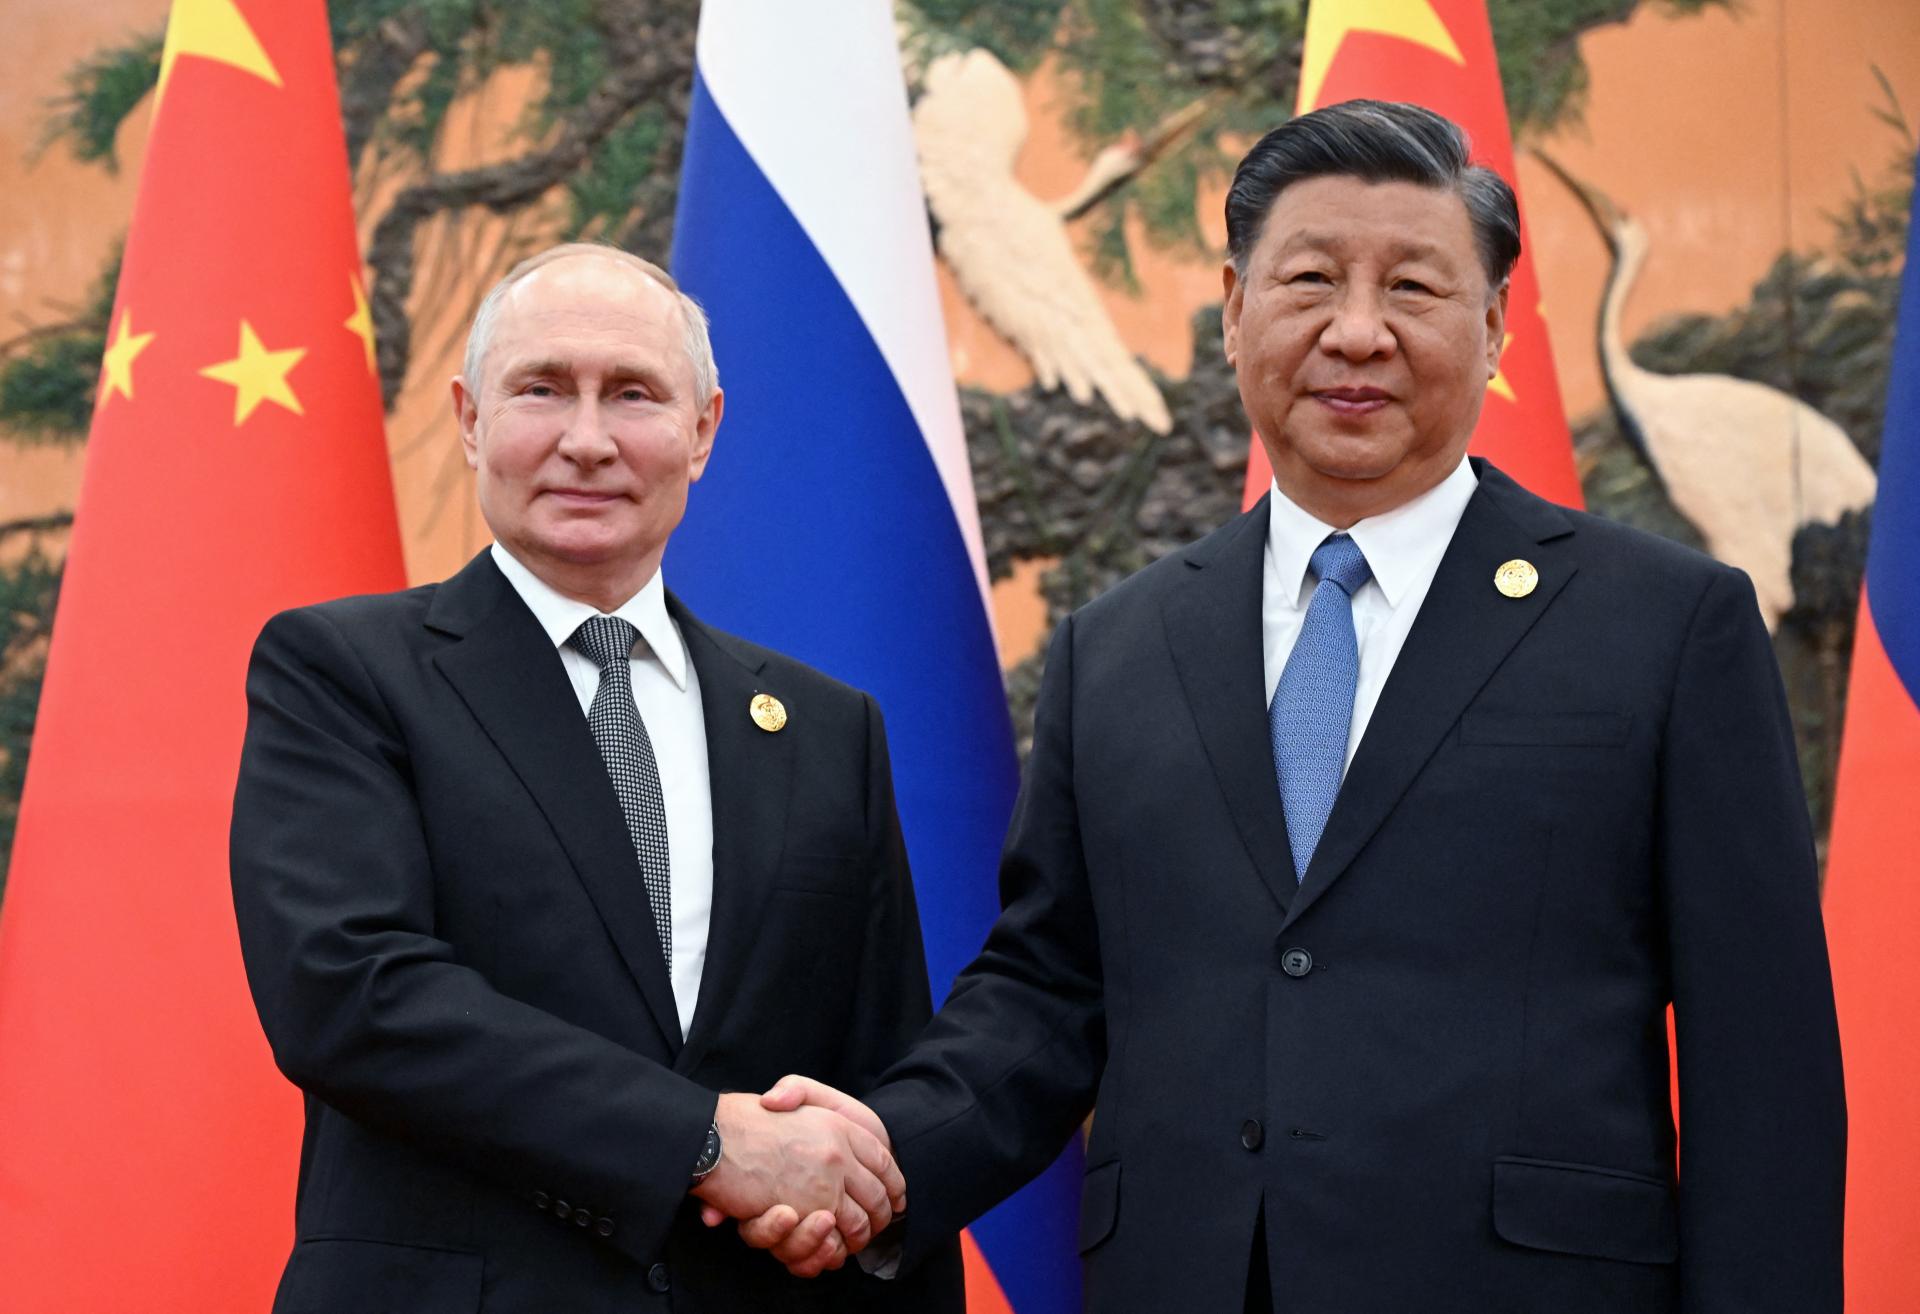 Putin sa stretol so Si Ťin-pchingom. Pochvaľovali si priateľstvo a spoluprácu